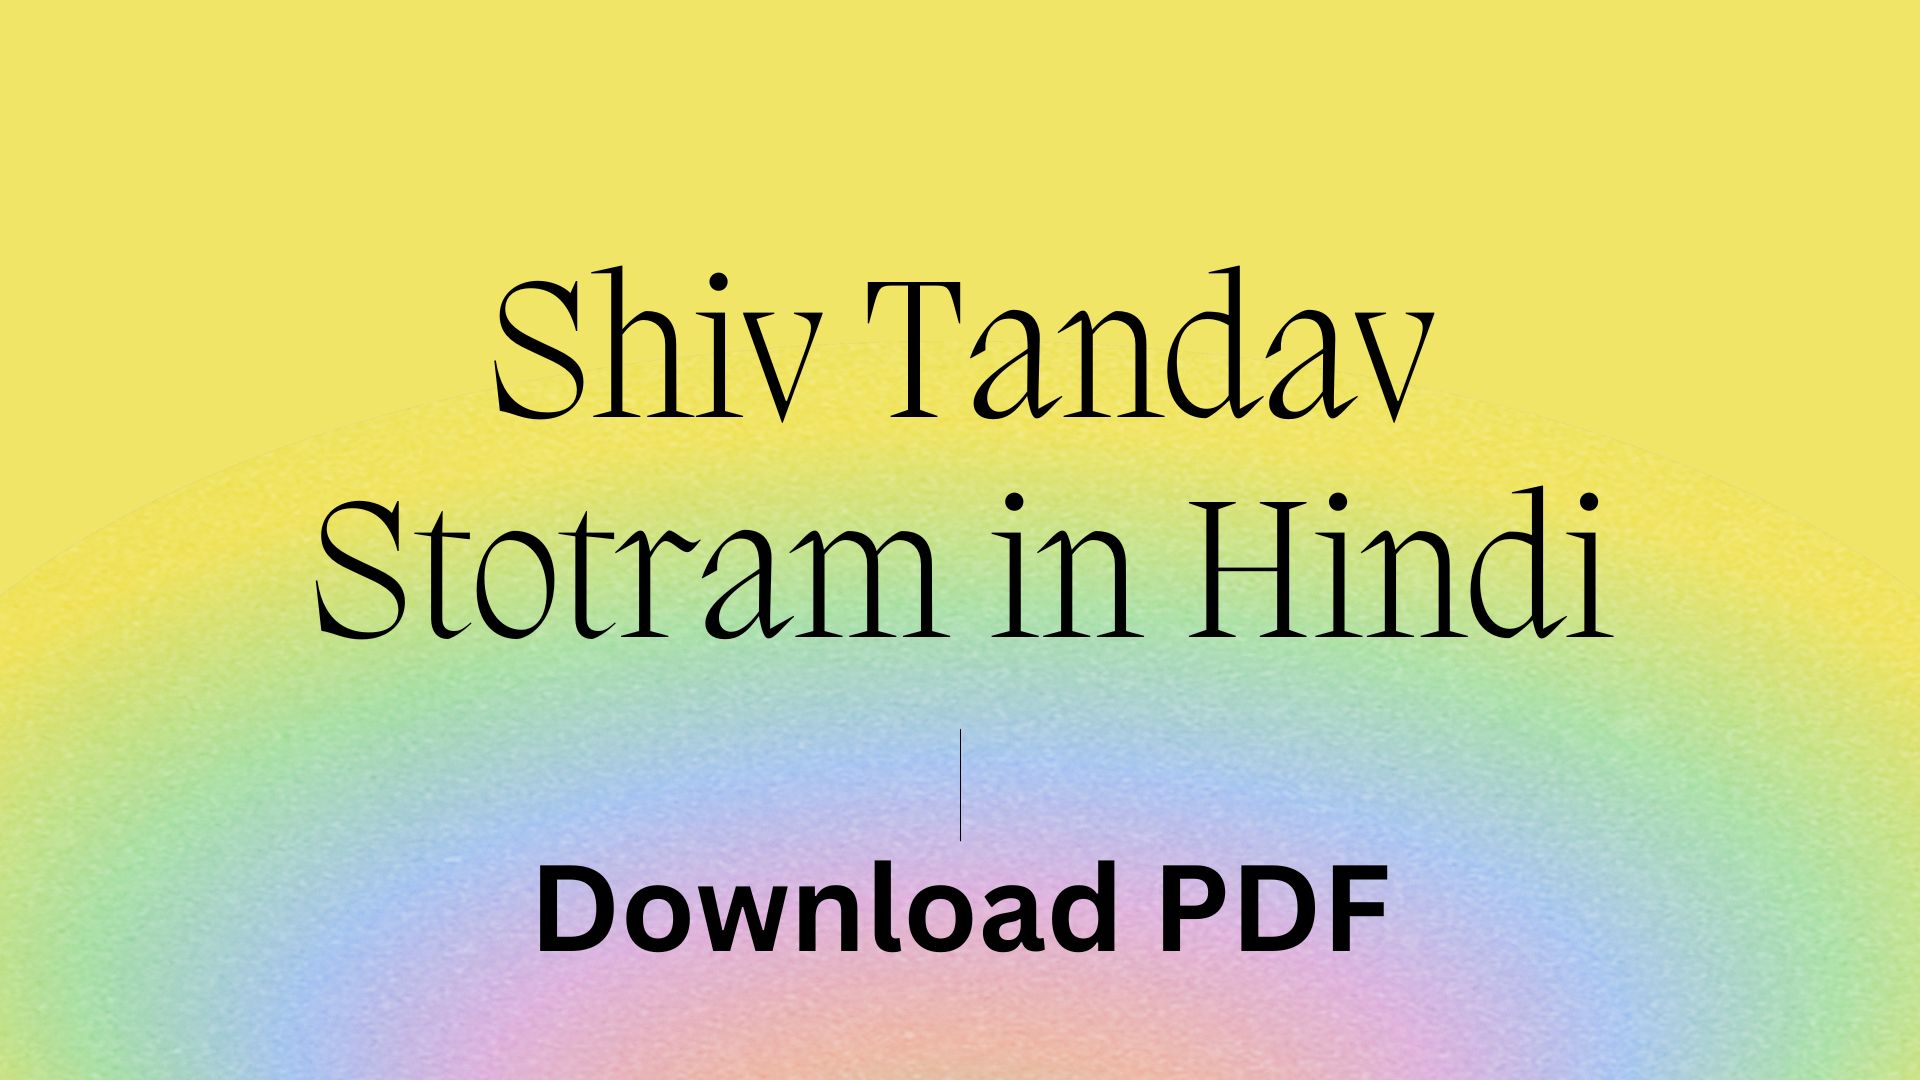 Shiv Tandav Stotram PDF in Hindi Download